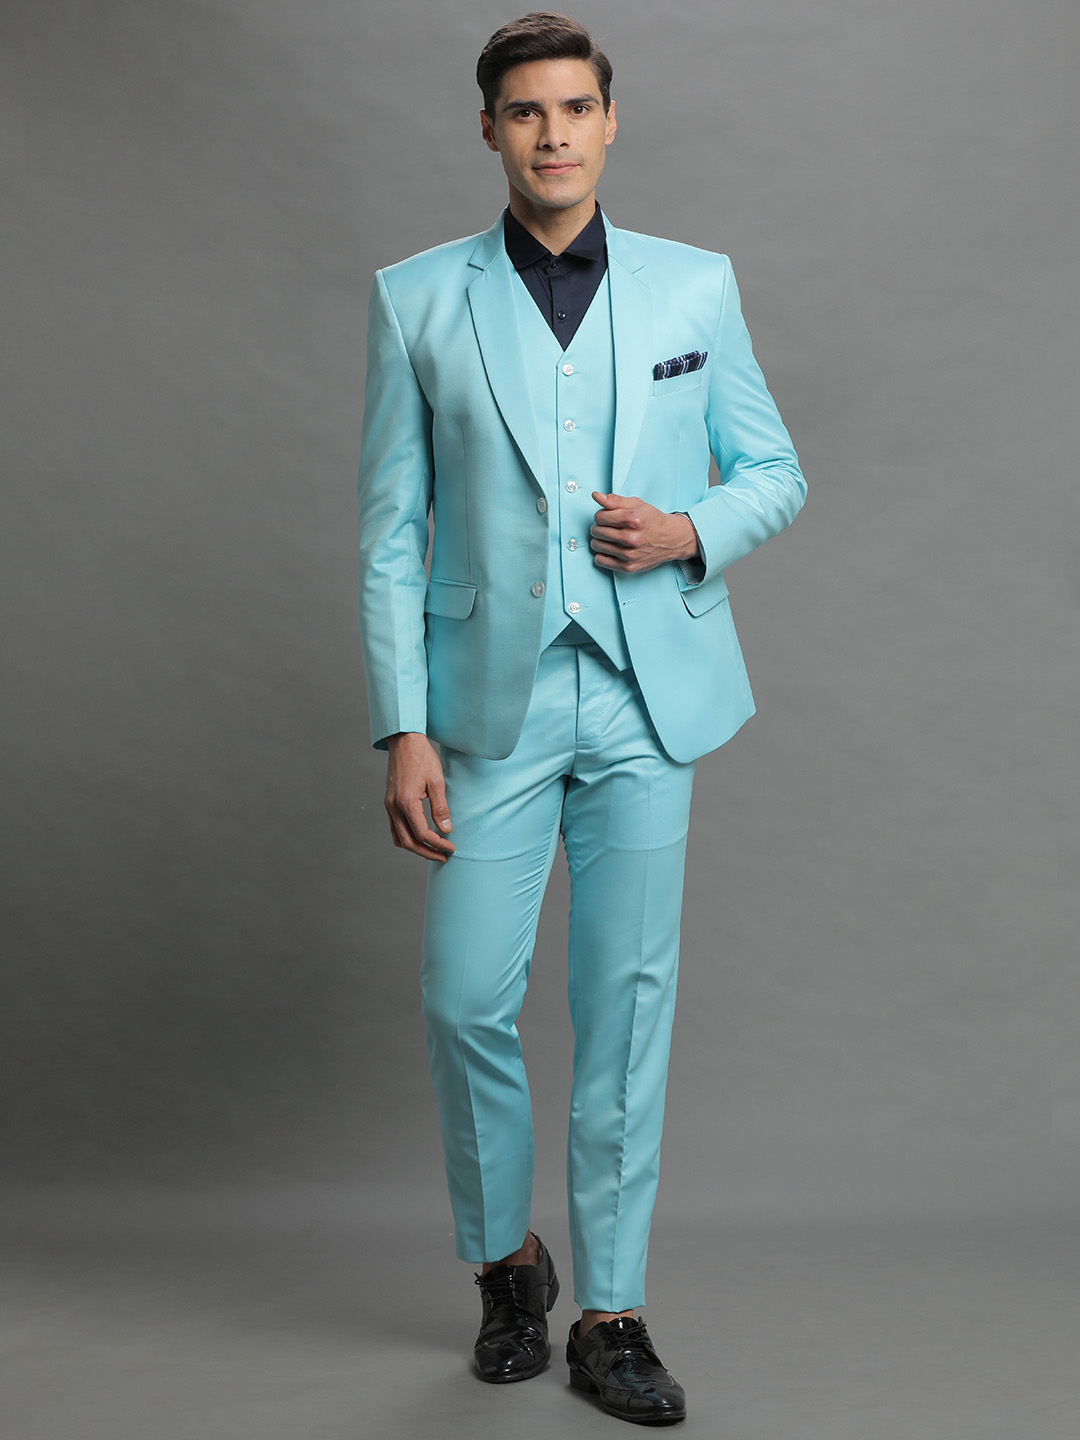 Neon Blue 3 Piece Suit